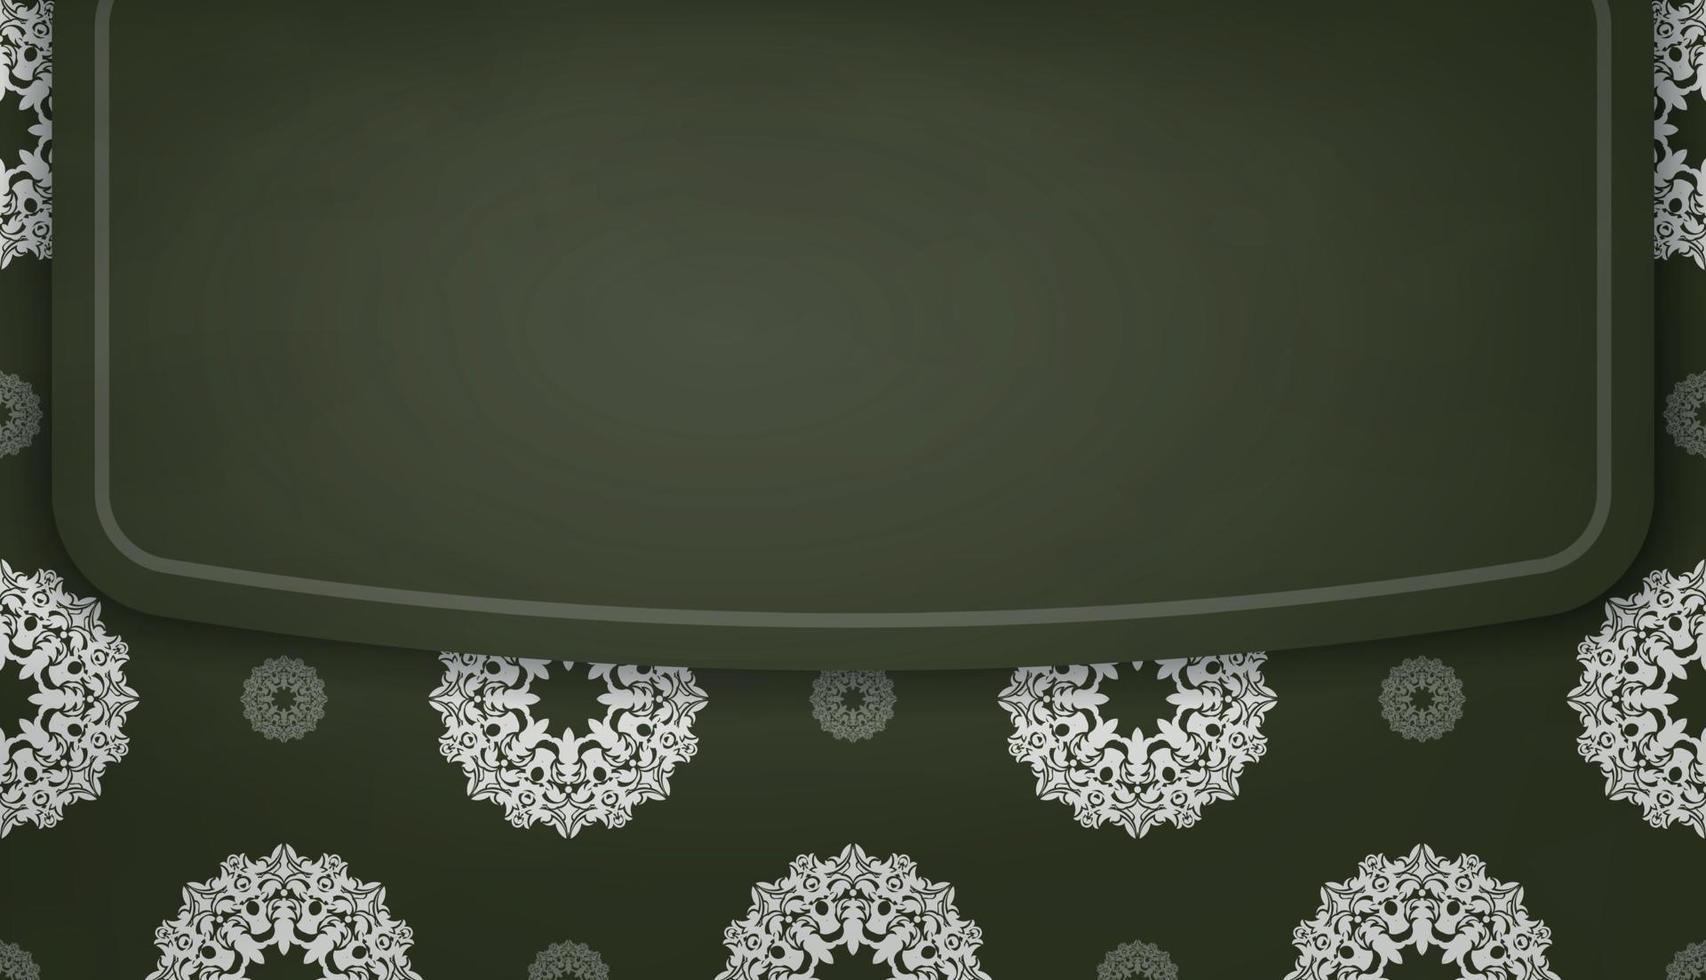 donker groen banier met luxueus wit ornamenten voor logo of tekst ontwerp vector